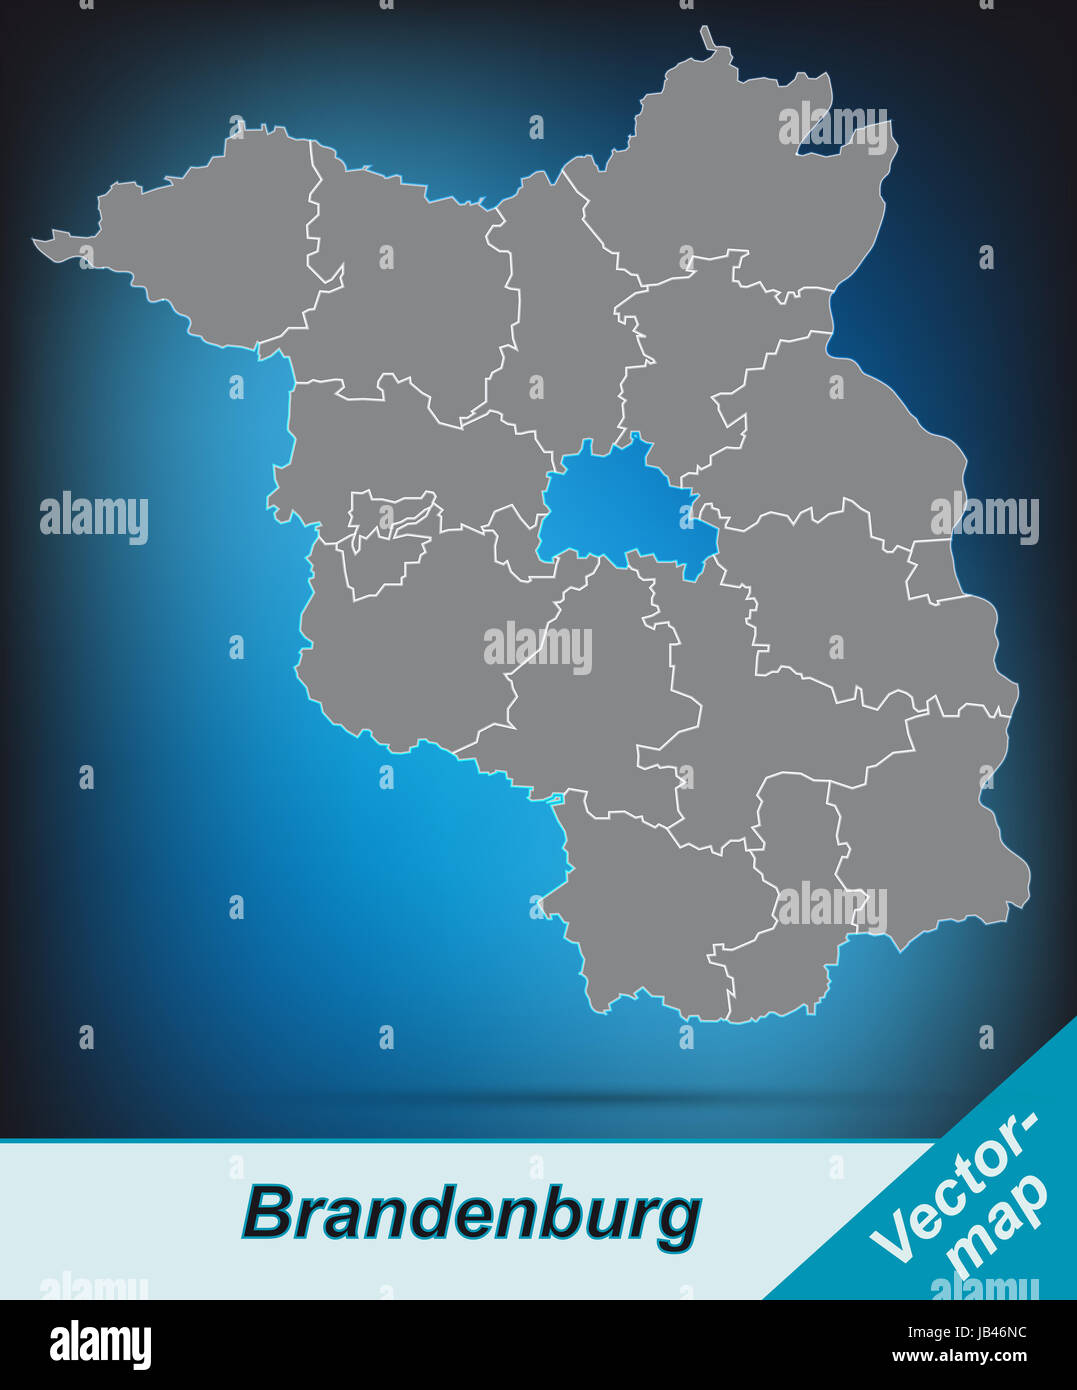 Brandeburgo in Deutschland als Grenzkarte mit Grenzen durch die ansprechende Gestaltung fügt sich die Karte perfekt in Ihr Vorhaben ein. Foto Stock